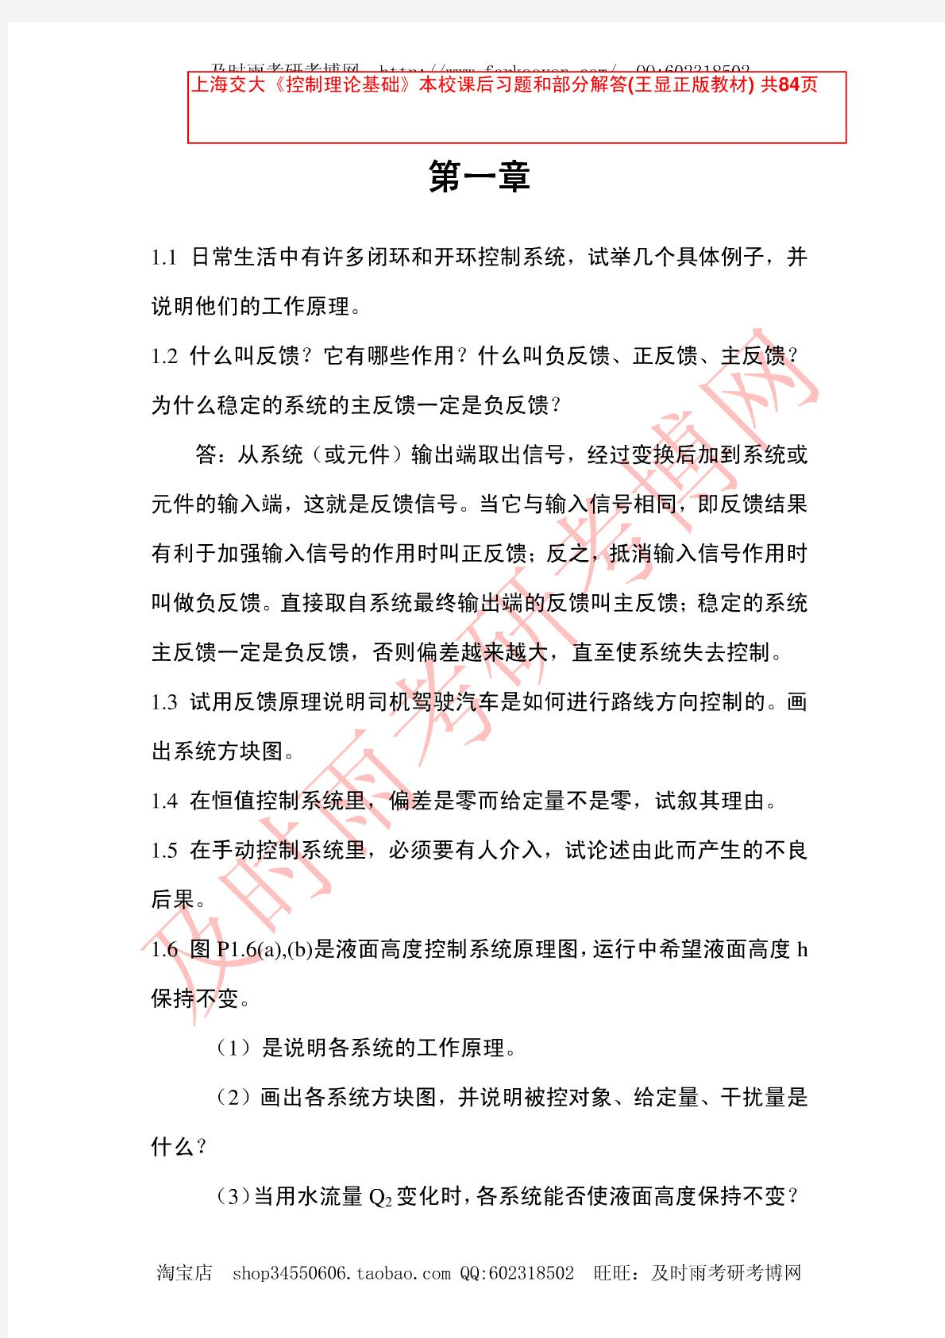 上海交大《控制理论基础》本校课后习题和部分解答(王显正版教材)共是84页